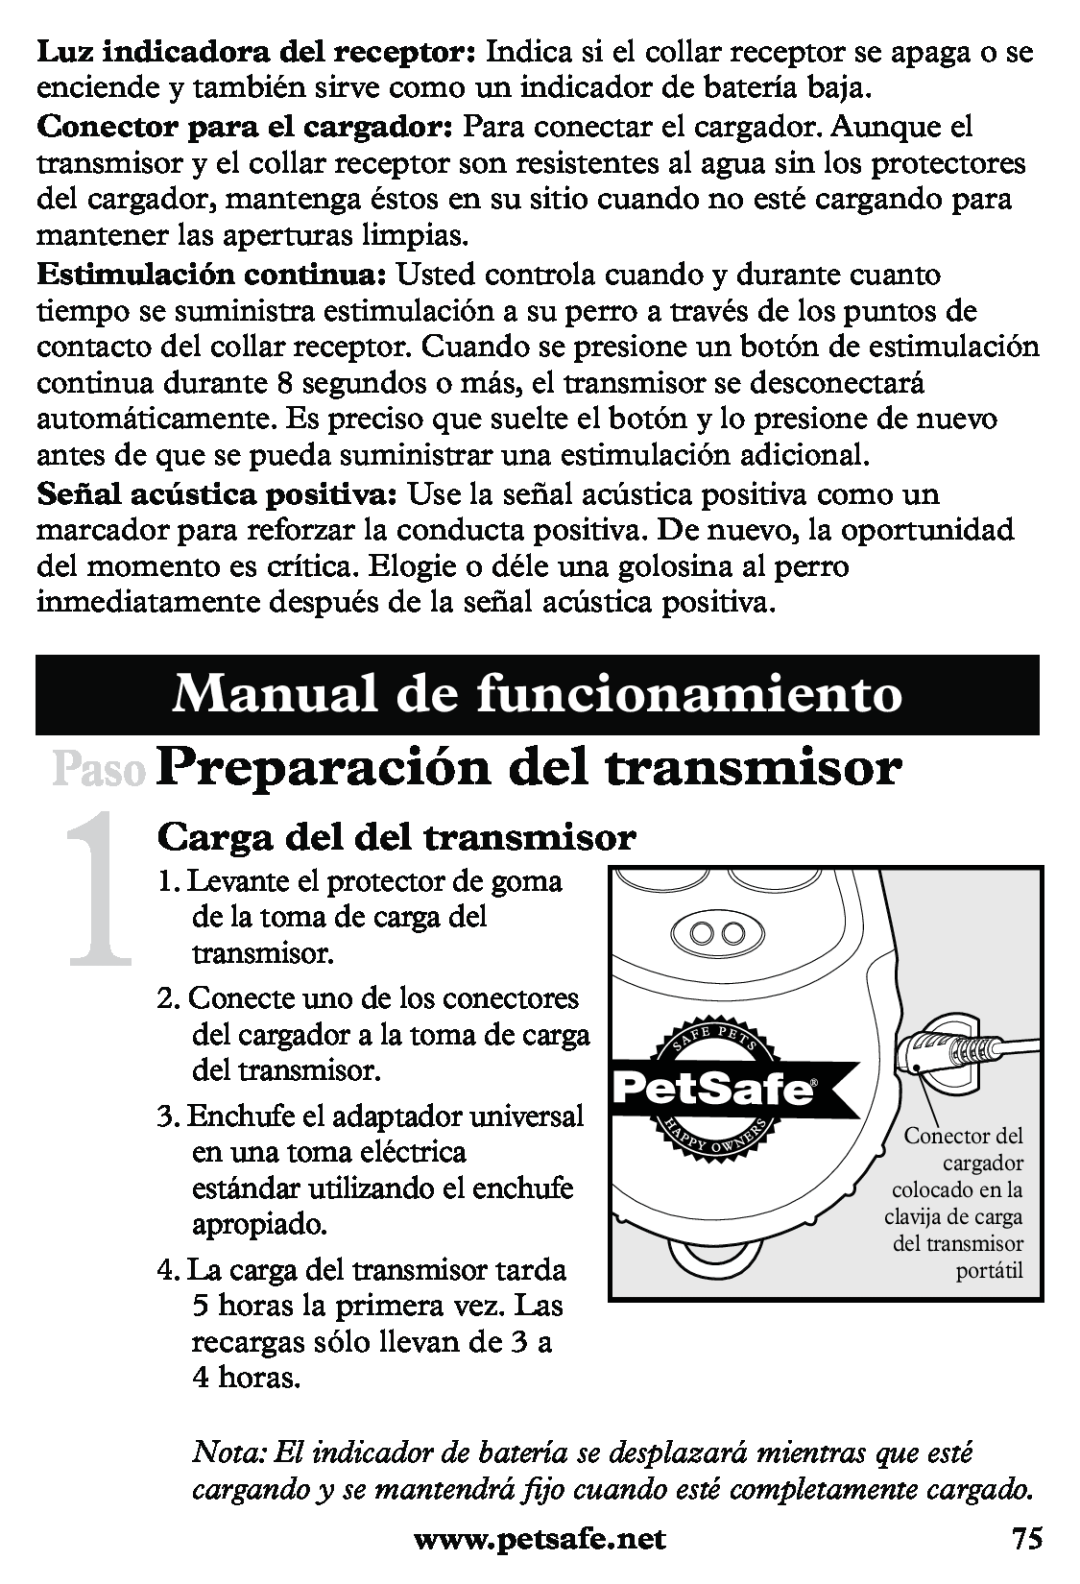 Petsafe PDT20-11939 Manual de funcionamiento, Paso Preparación del transmisor, 1Carga del del transmisor 